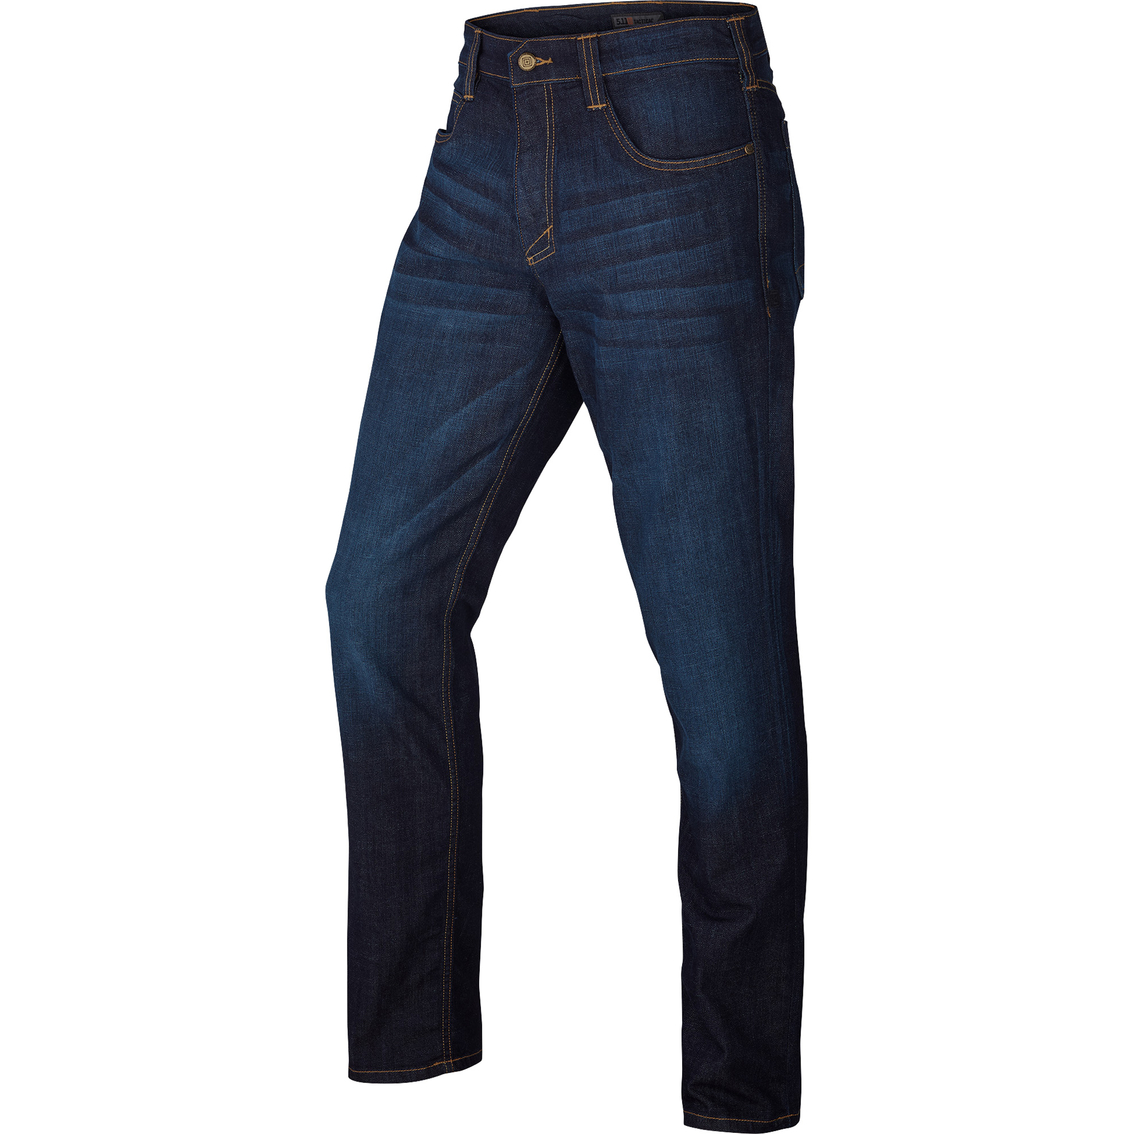 5.11 Slim Fit Defender Flex Jeans | Pants | Clothing & Accessories ...